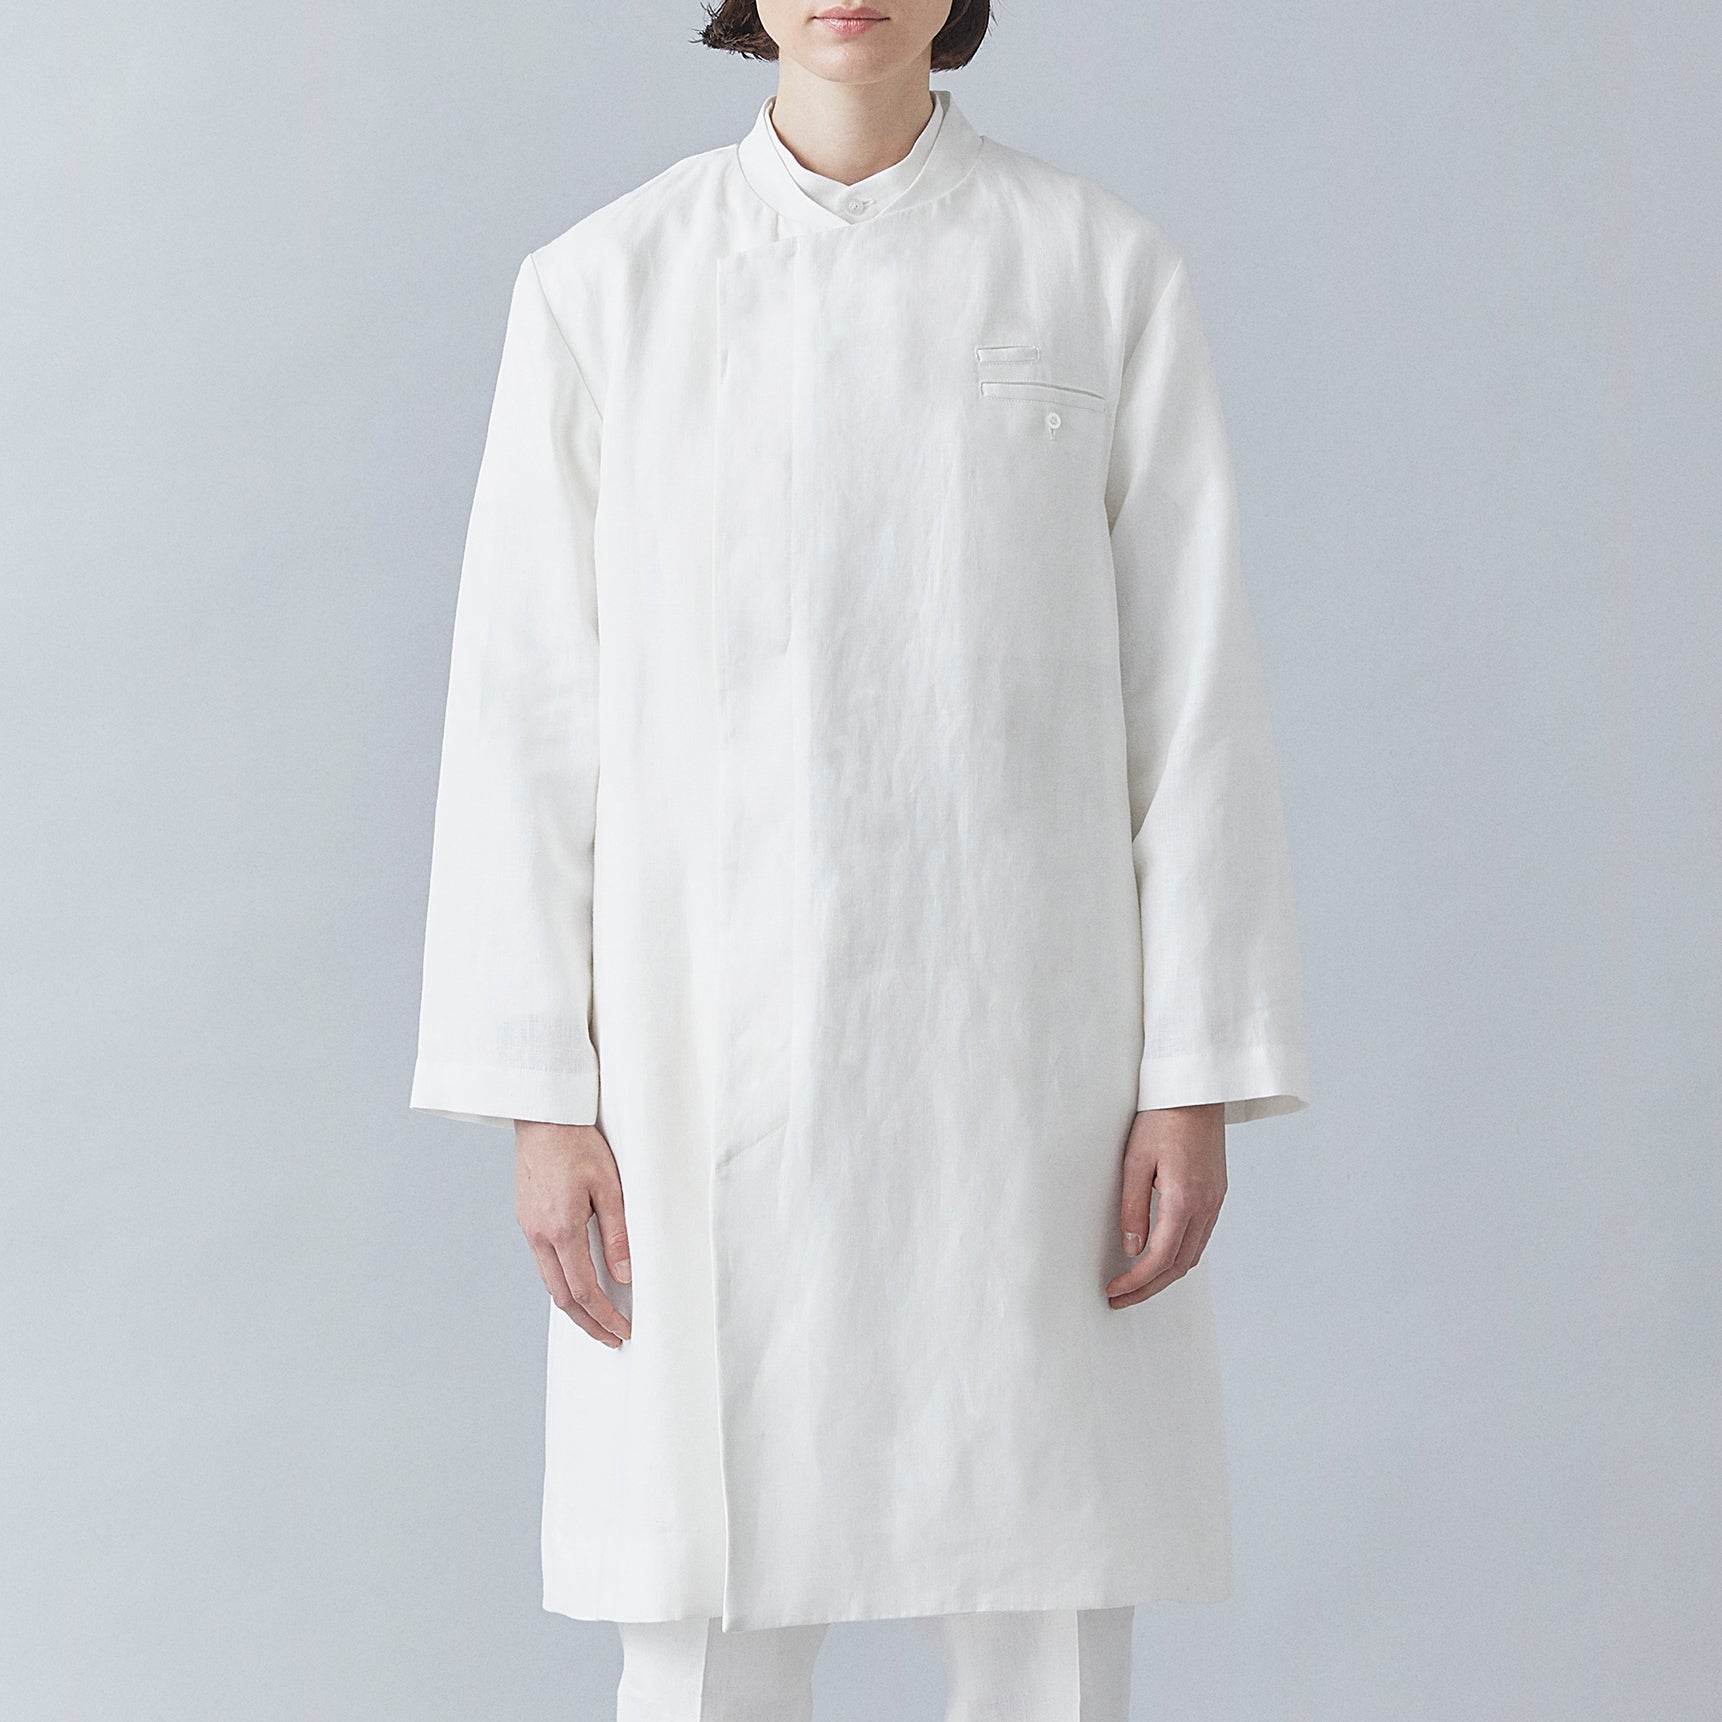 Atelier Coat (White)